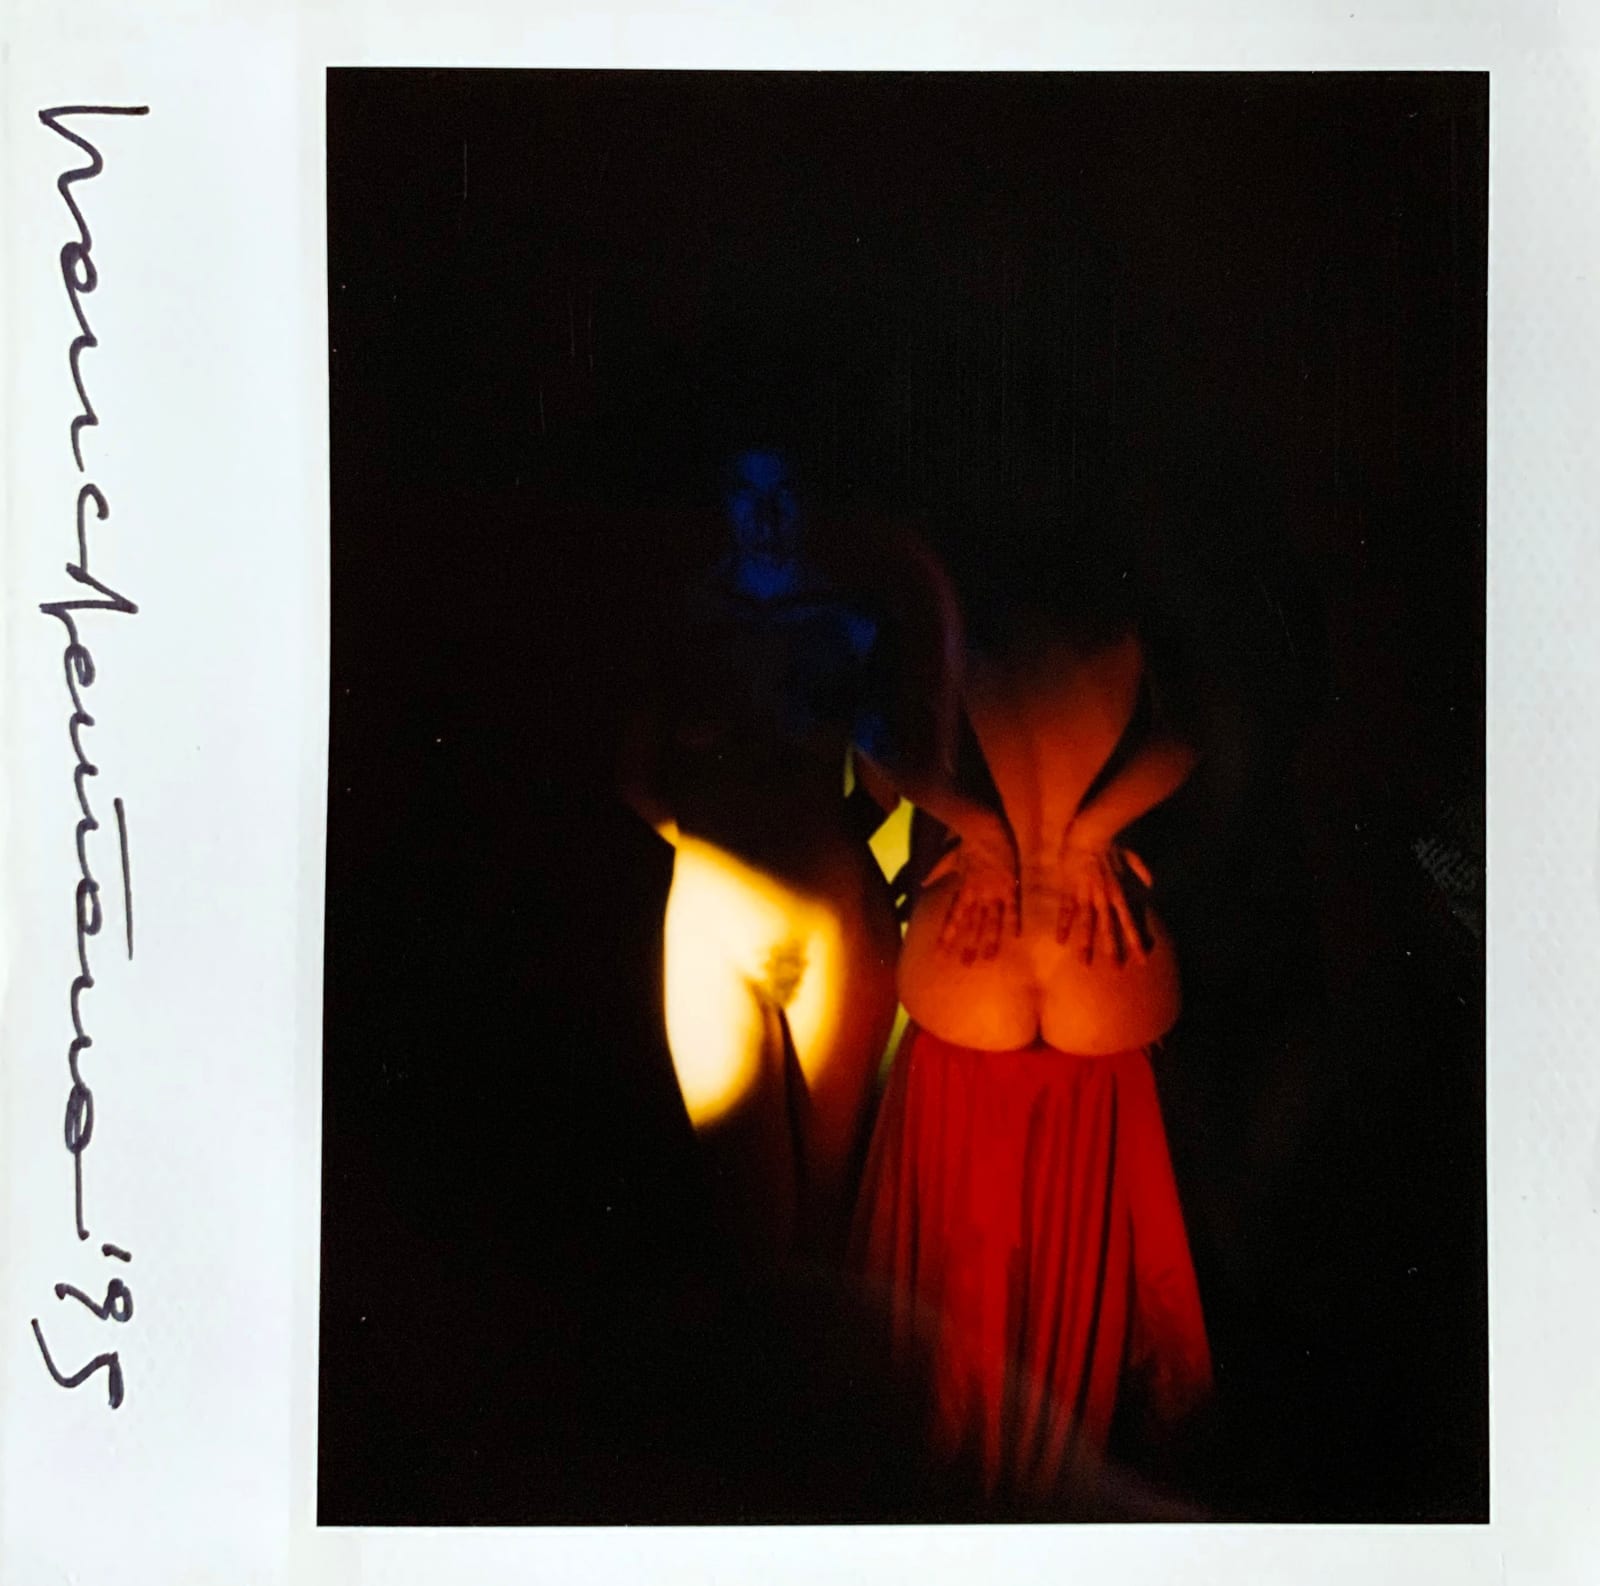 Franco Fontana, Polaroid, 1995, 1995